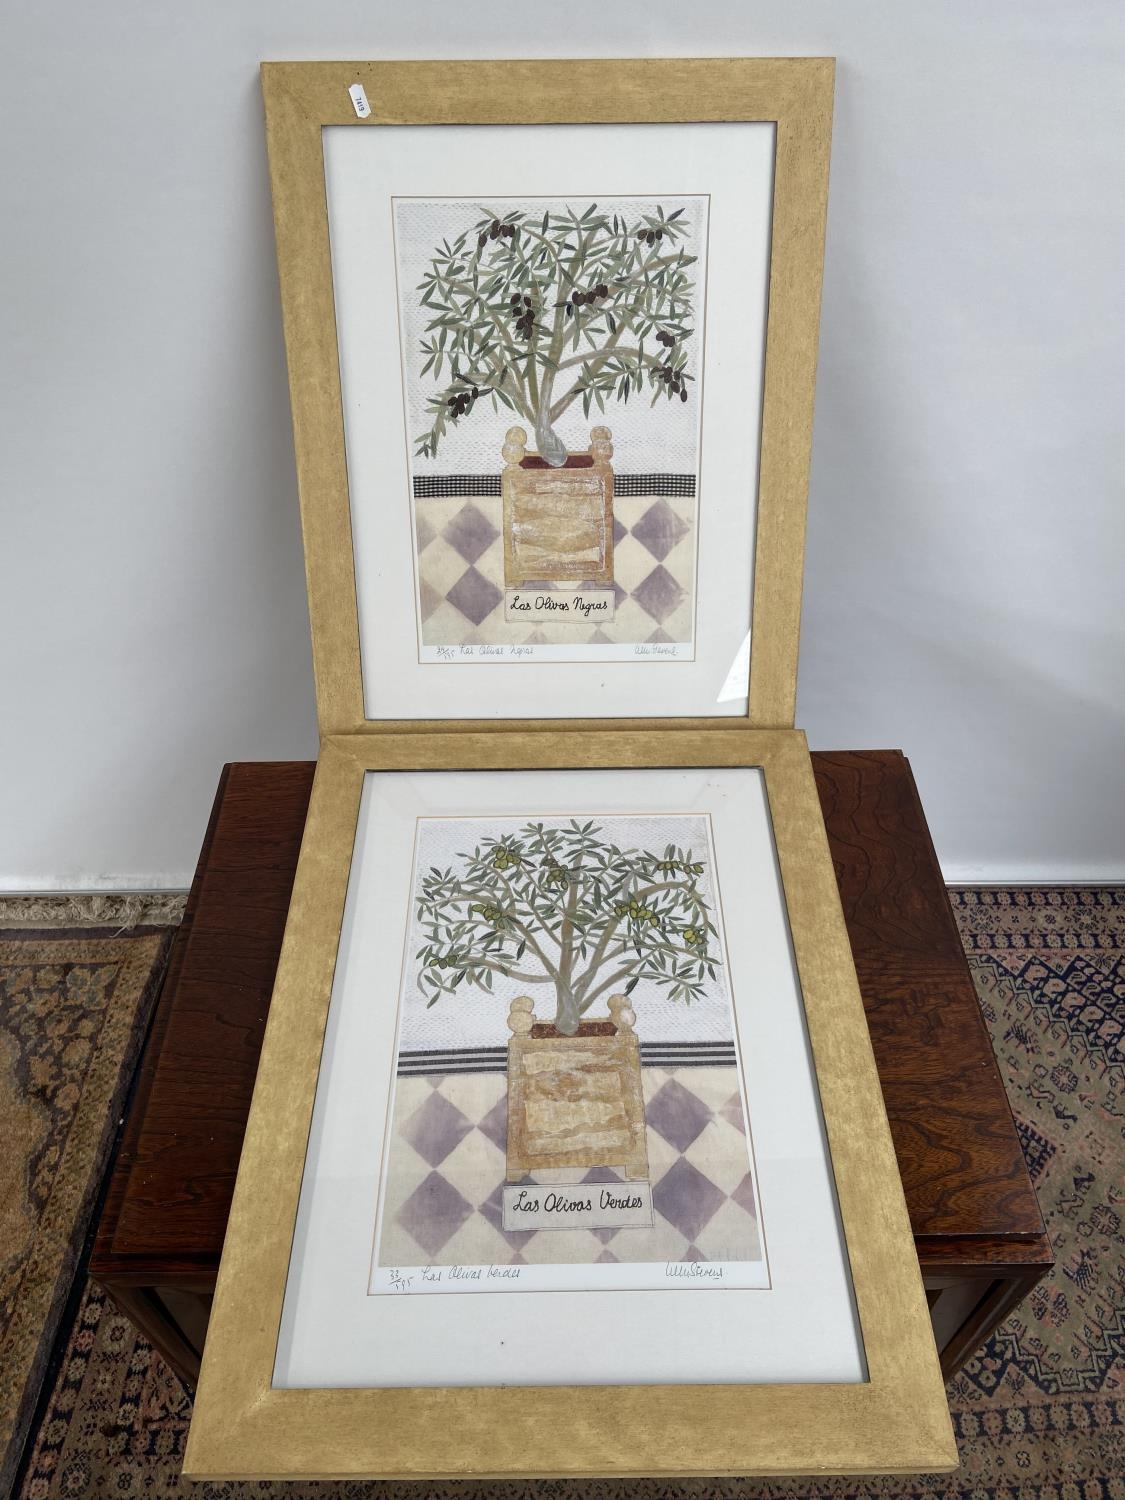 Two limited edition prints after Willemien Stevens titled 'Las Olivas Negras & Las Olivas Verdes'